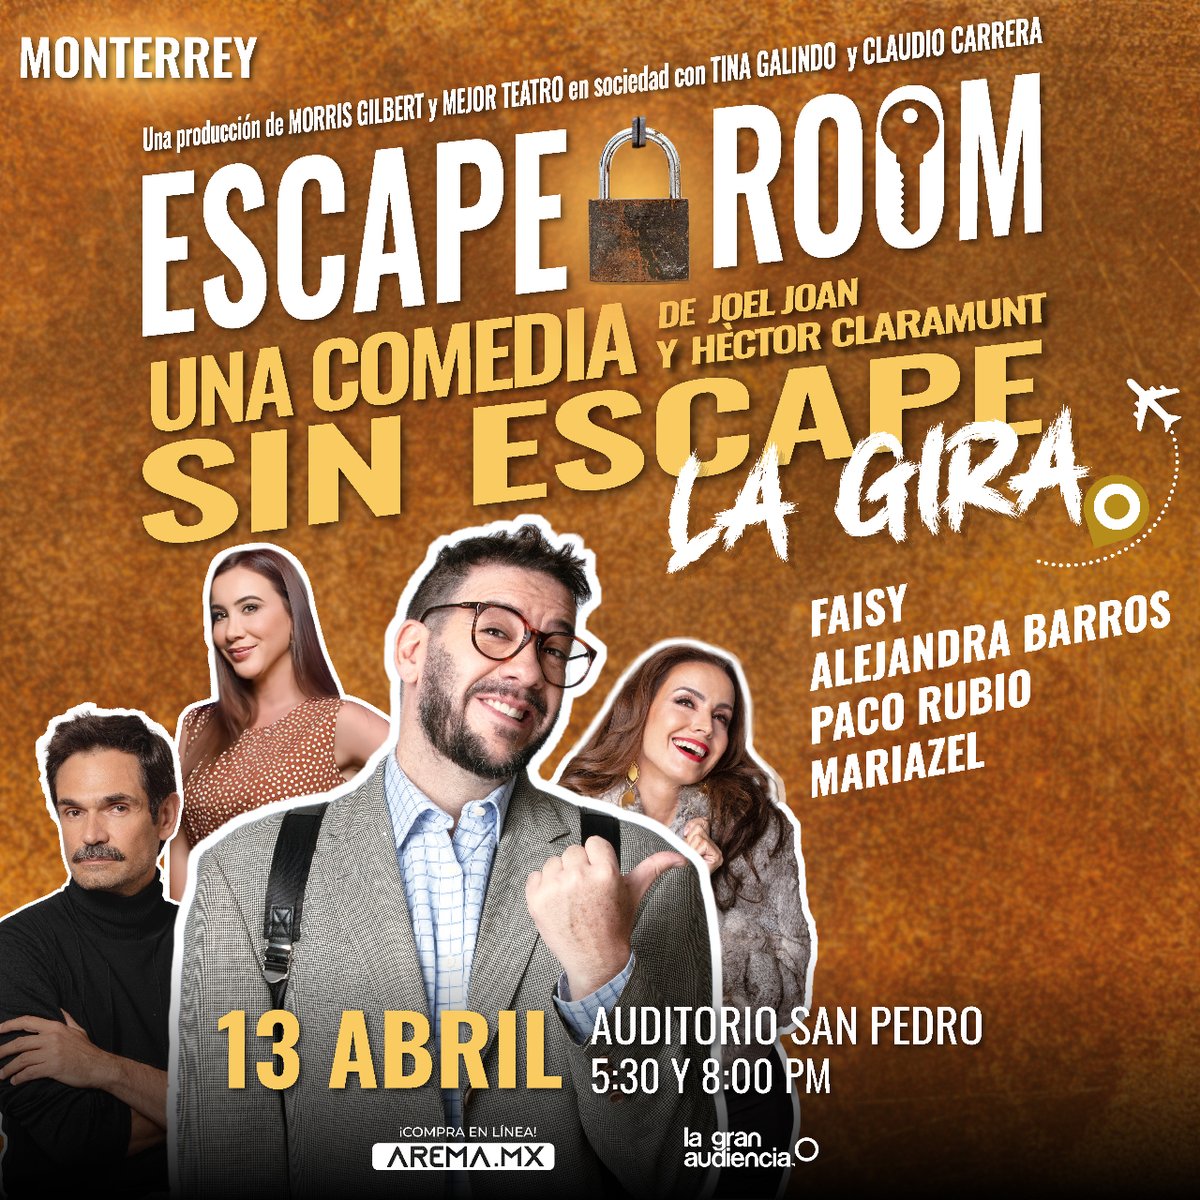 El tiempo corre y los boletos para las dos funciones de @AtrapadosMex (Escape Room) en Monterrey están por agotarse. ¿Qué esperas para adquirir los tuyos? 📍 Monterrey - Auditorio San Pedro 📆 Sábado 13 de abril ⏰ Funciones 5:30 y 8:00 p.m. 🎟️ bit.ly/ERMonterrey